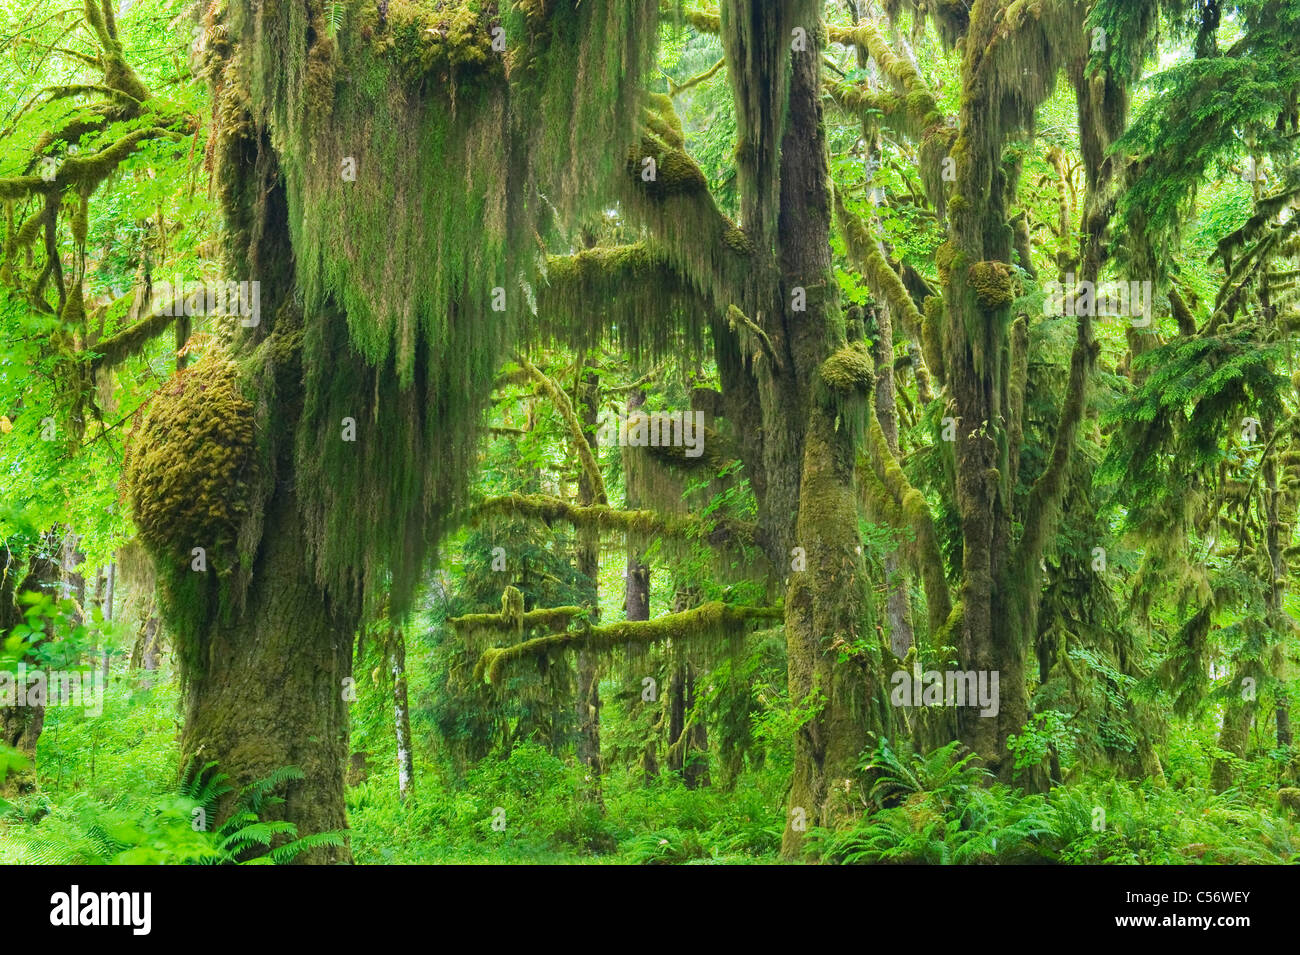 Moss-drappeggiato Bigleaf aceri, foreste pluviali temperate, Hoh River Valley, il Parco Nazionale di Olympic, Washington Foto Stock